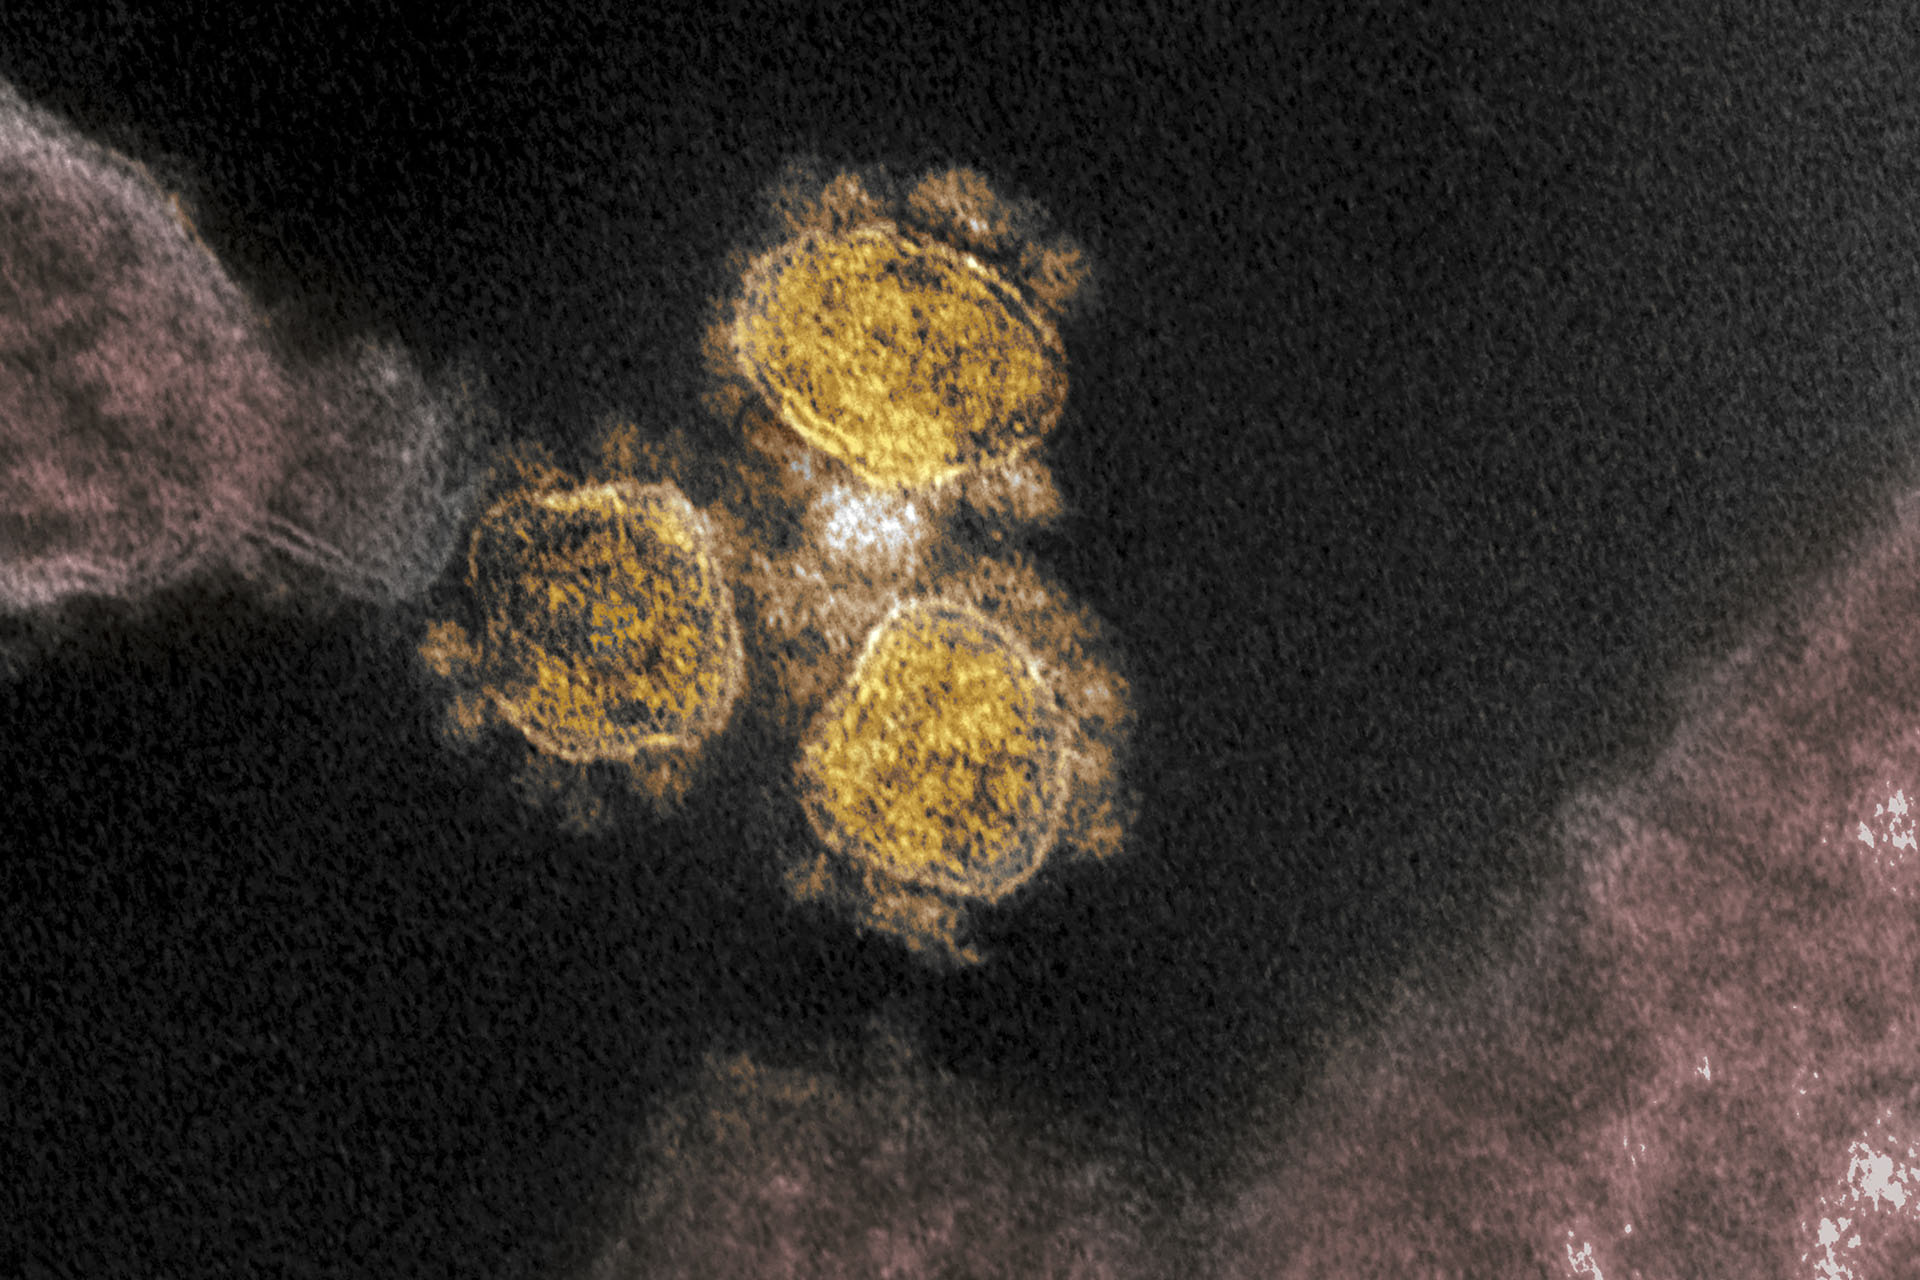 Kínai tudósok 2015-ben biofegyverként vizsgálták a koronavírusokat